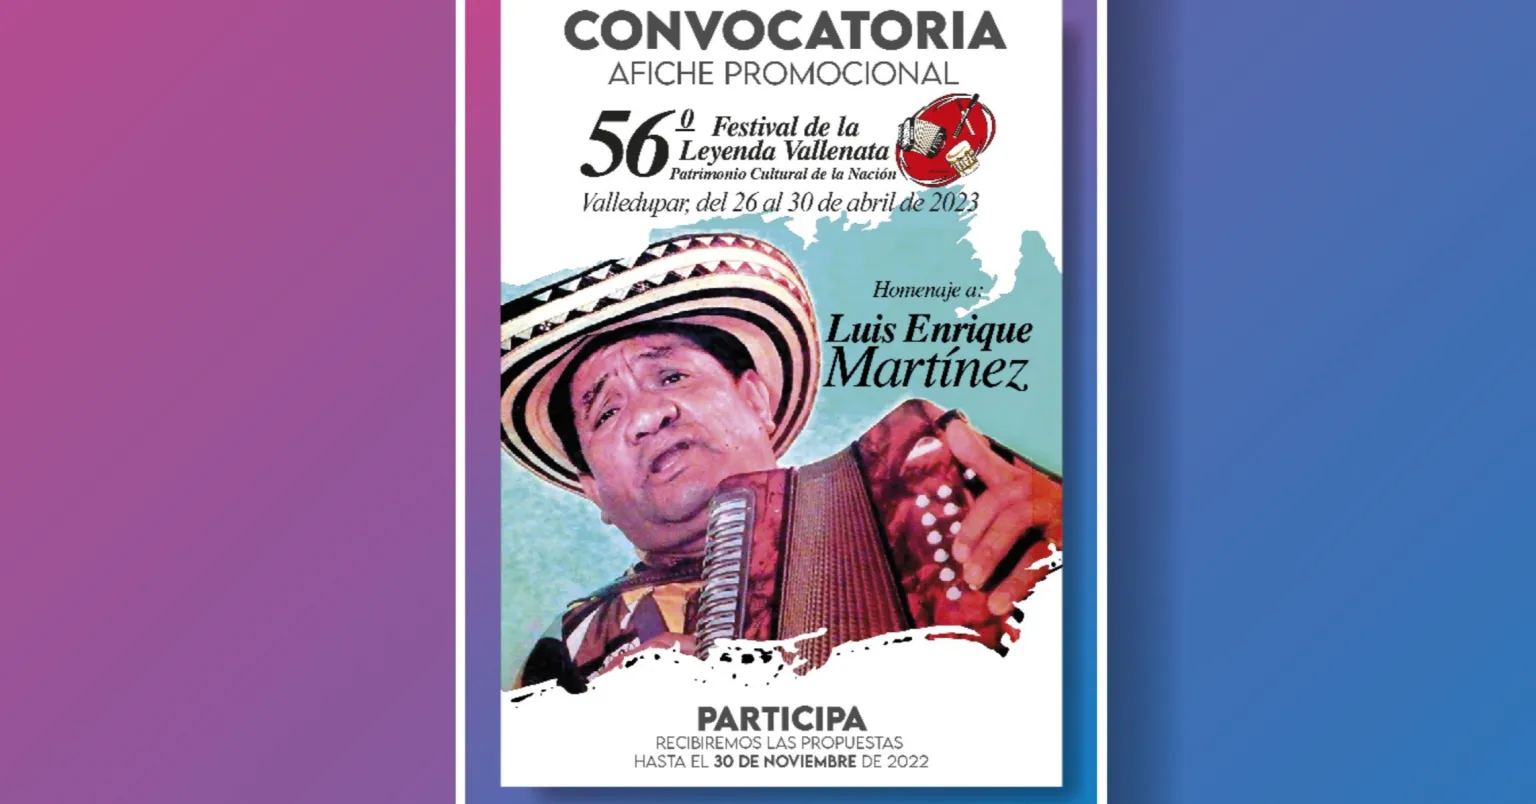 Abierta convocatoria para el afiche promocional del 56° Festival de la Leyenda Vallenata